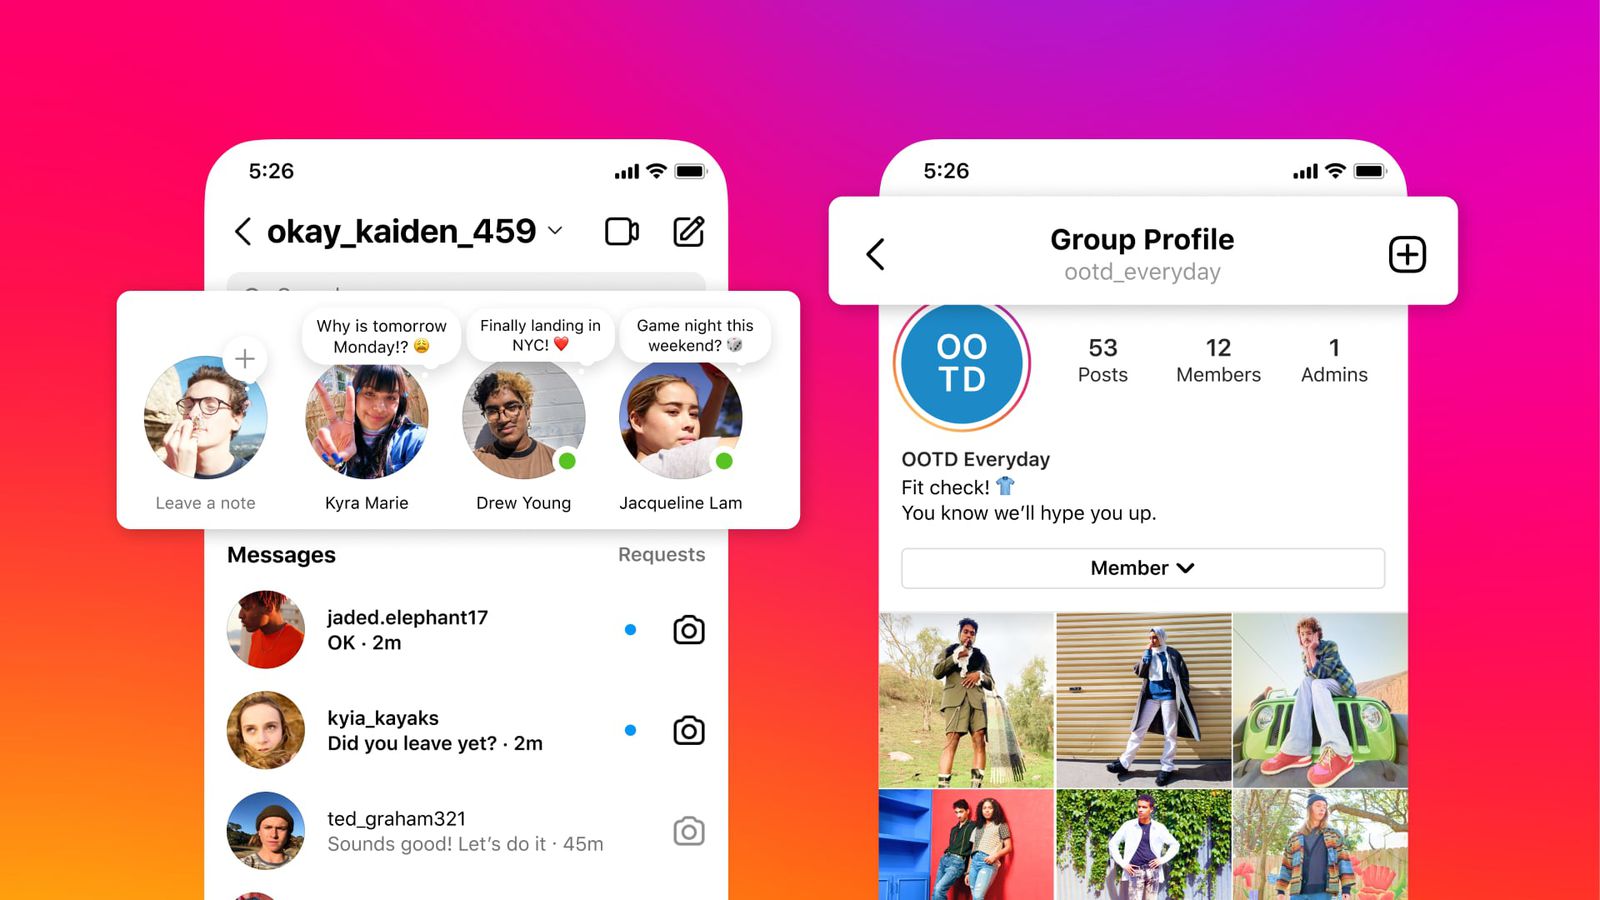 Những ưu tiên hàng đầu của giám đốc Instagram cho năm 2024 Font Instagram 2024
Người dùng Instagram có thể mong đợi nhiều cải tiến từ giám đốc Instagram trong năm